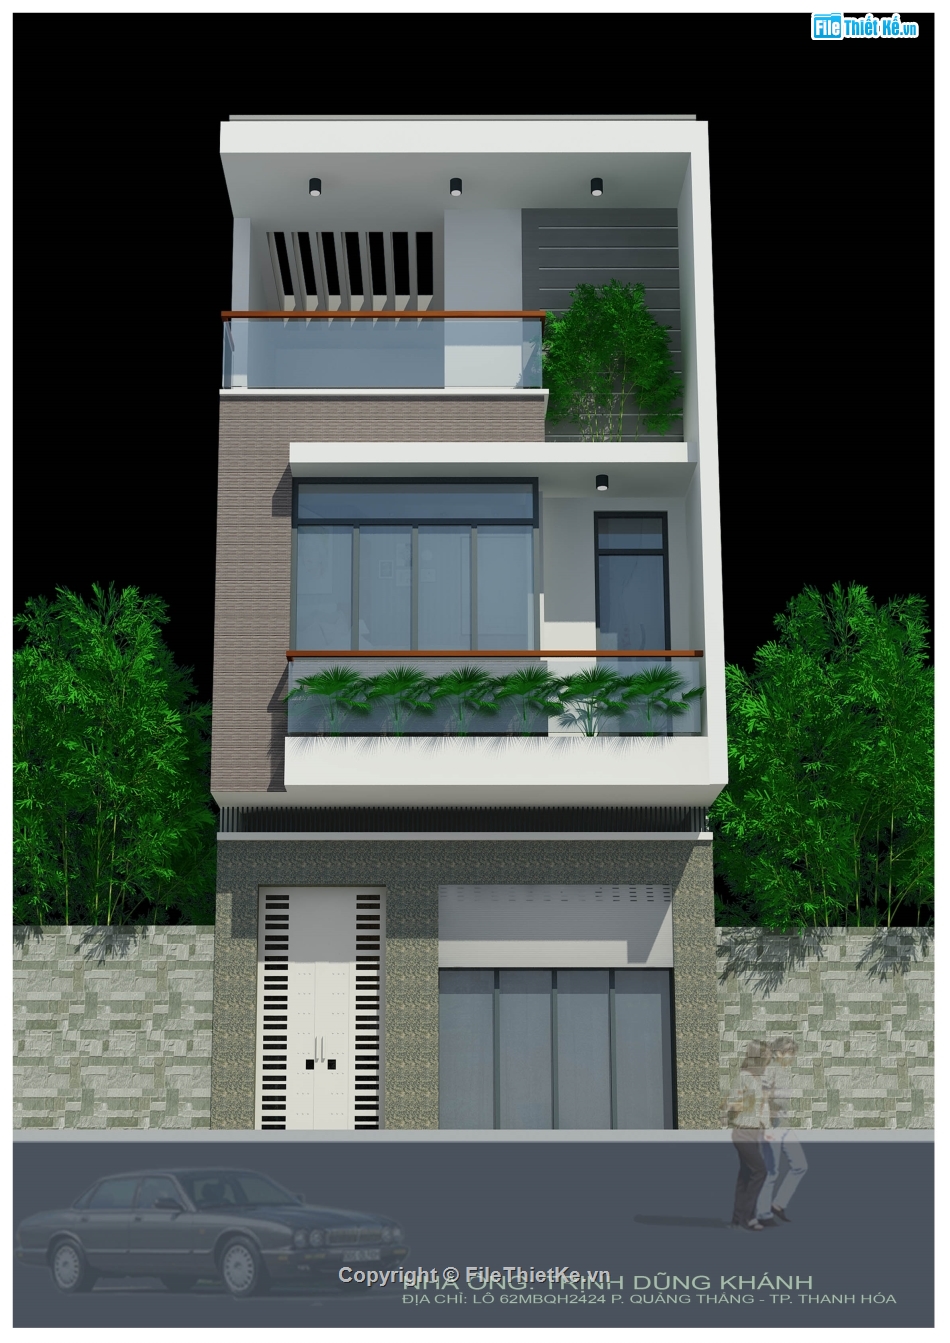 bản vẽ nhà phố 3 tầng,full kiến trúc nhà phố,nhà phố 3 tầng 6x14.5m,mẫu nhà phố 3 tầng,trọn bộ nhà phố 3 tầng